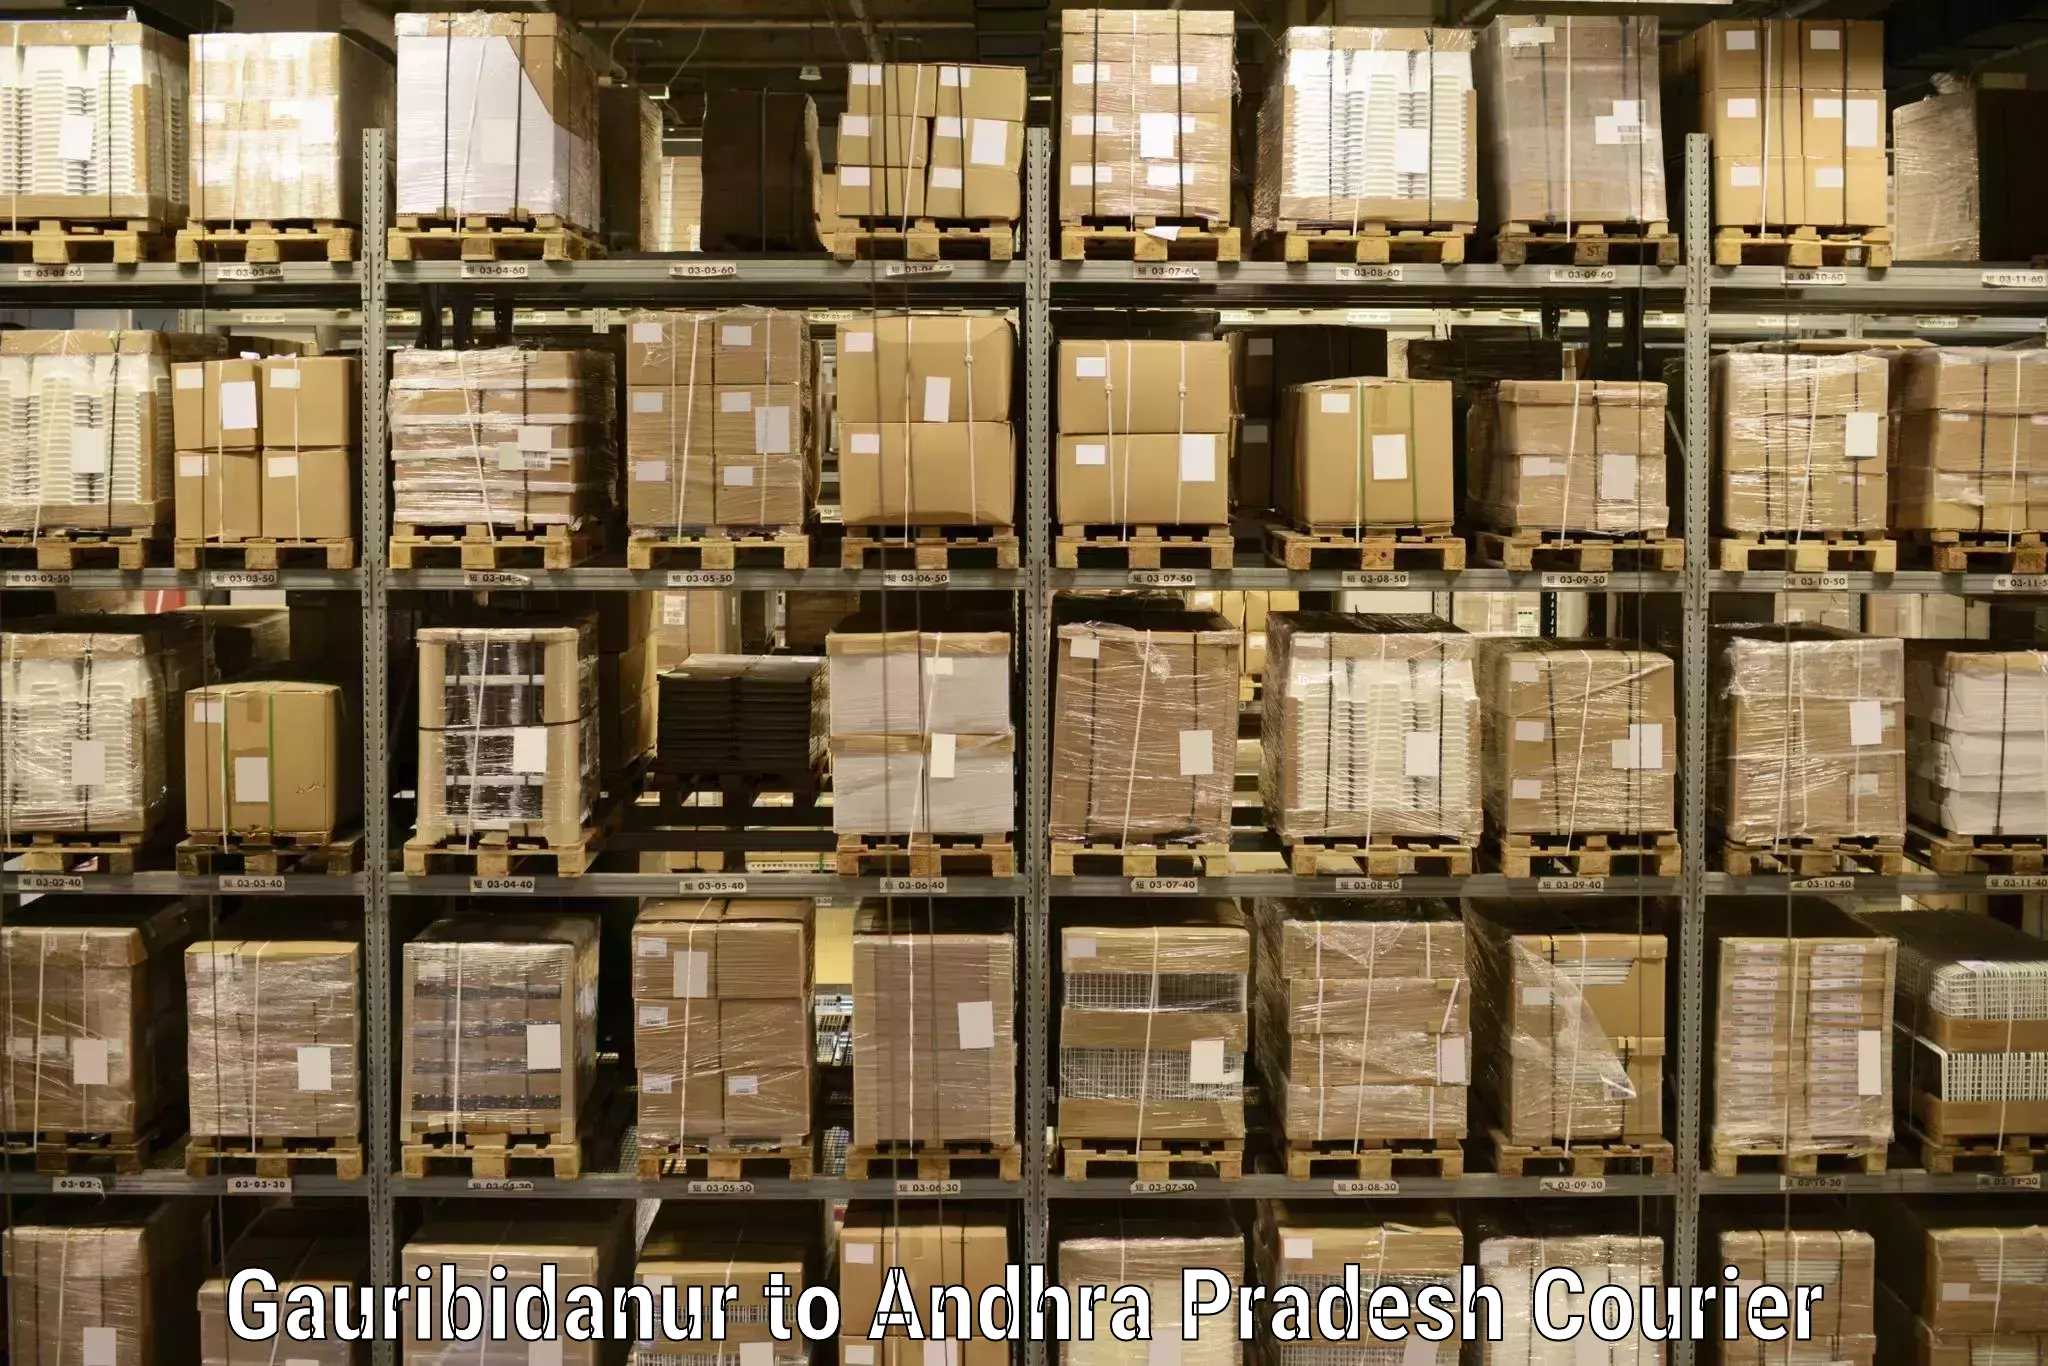 Expedited shipping methods in Gauribidanur to Betamcherla